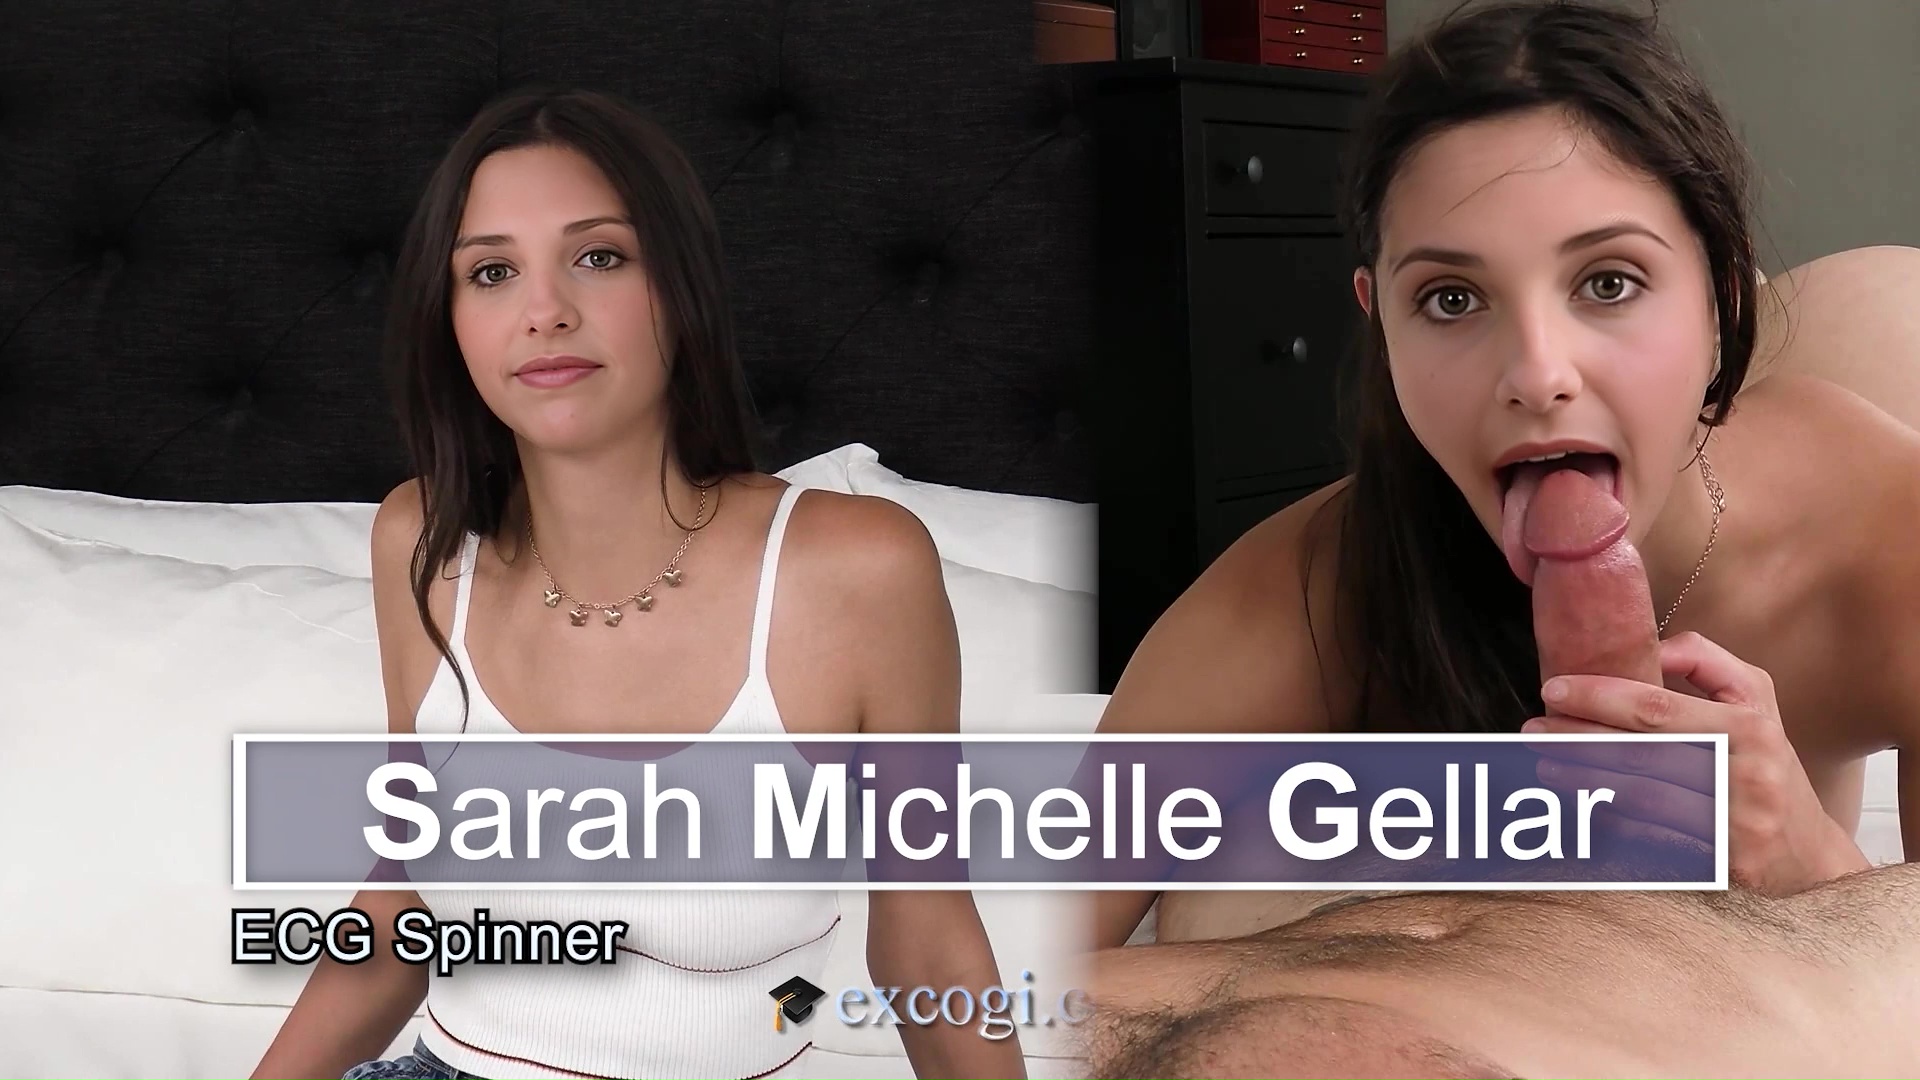 Sarah Michelle Gellar - ECG Spinner - Trailer